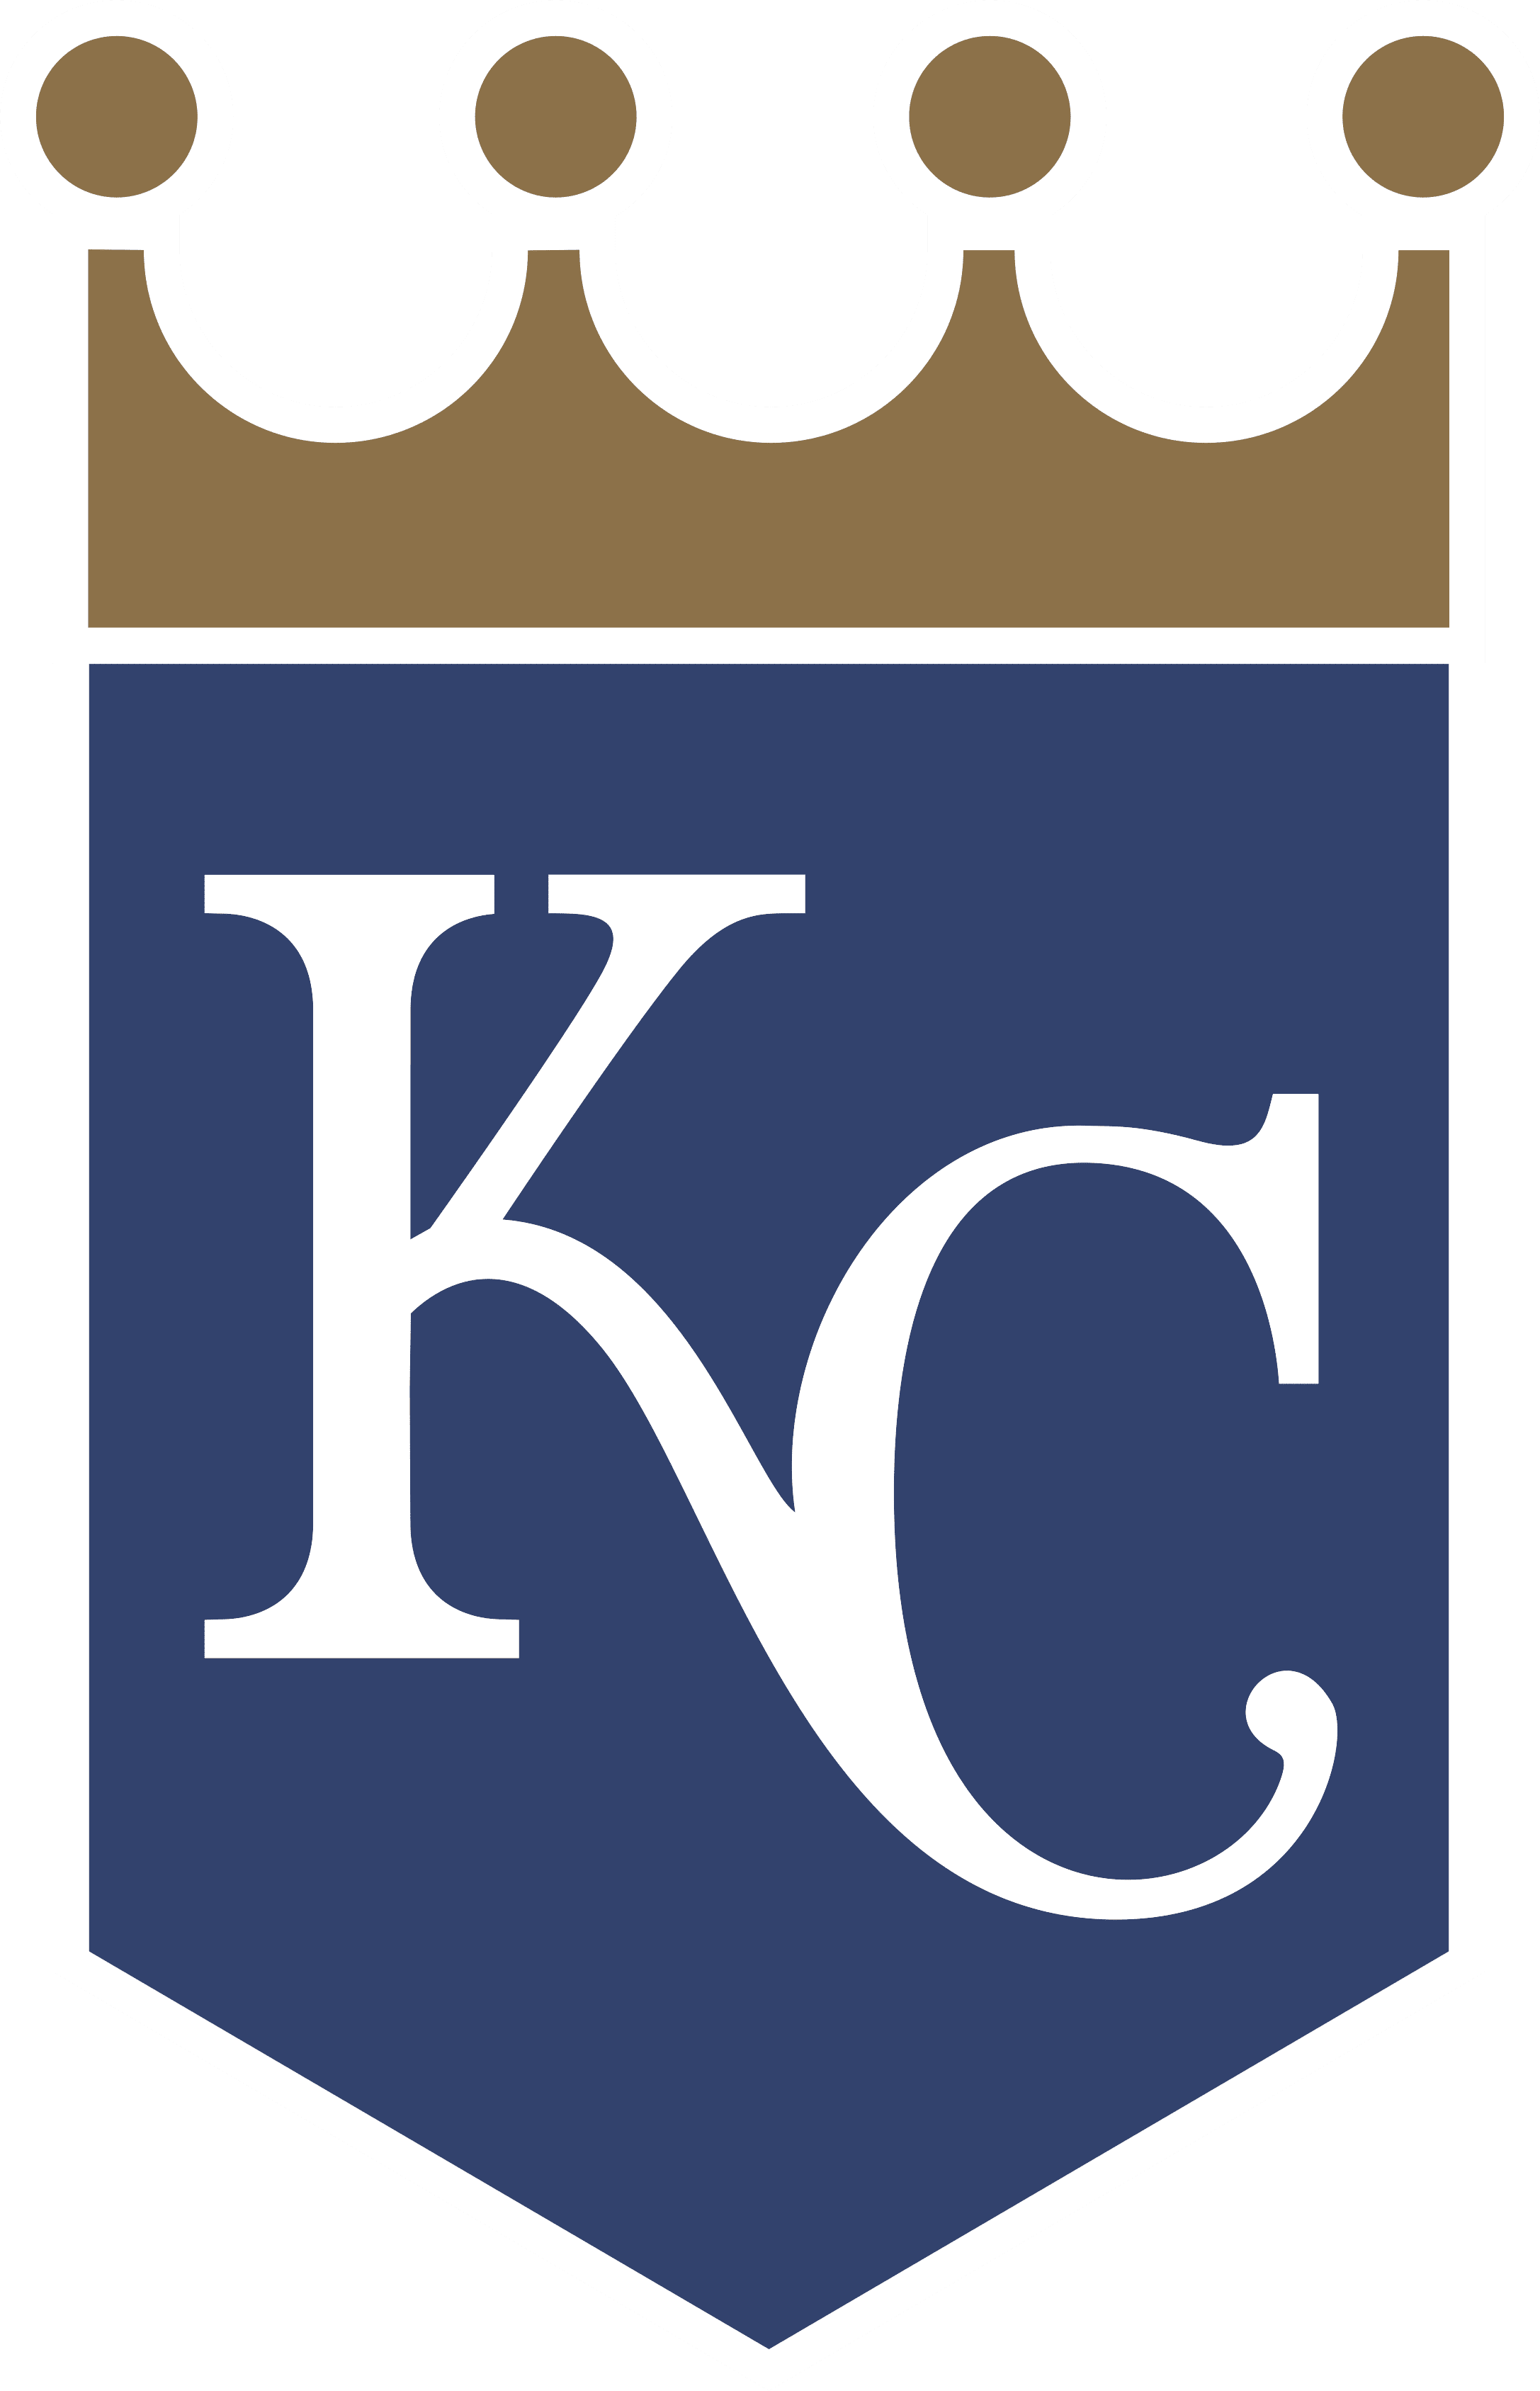 Kansas City Royals Heart svg, mlb svg, eps, dxf, png, digital file